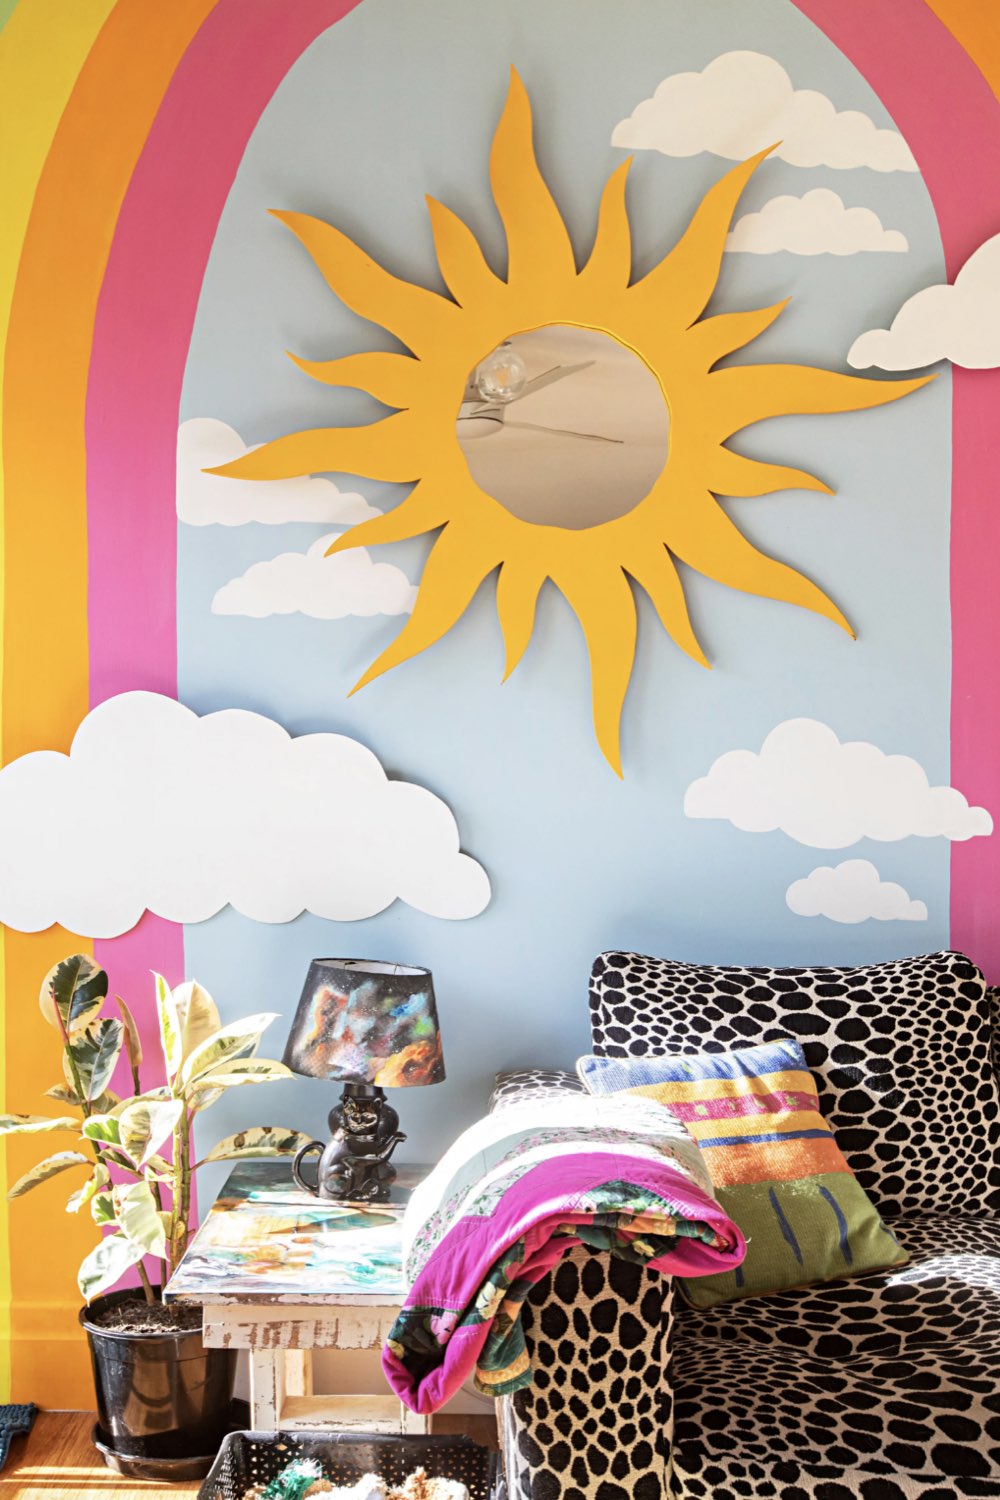 maison deco pop hyper coloree fresque murale arc en ciel soleil nuage couleur